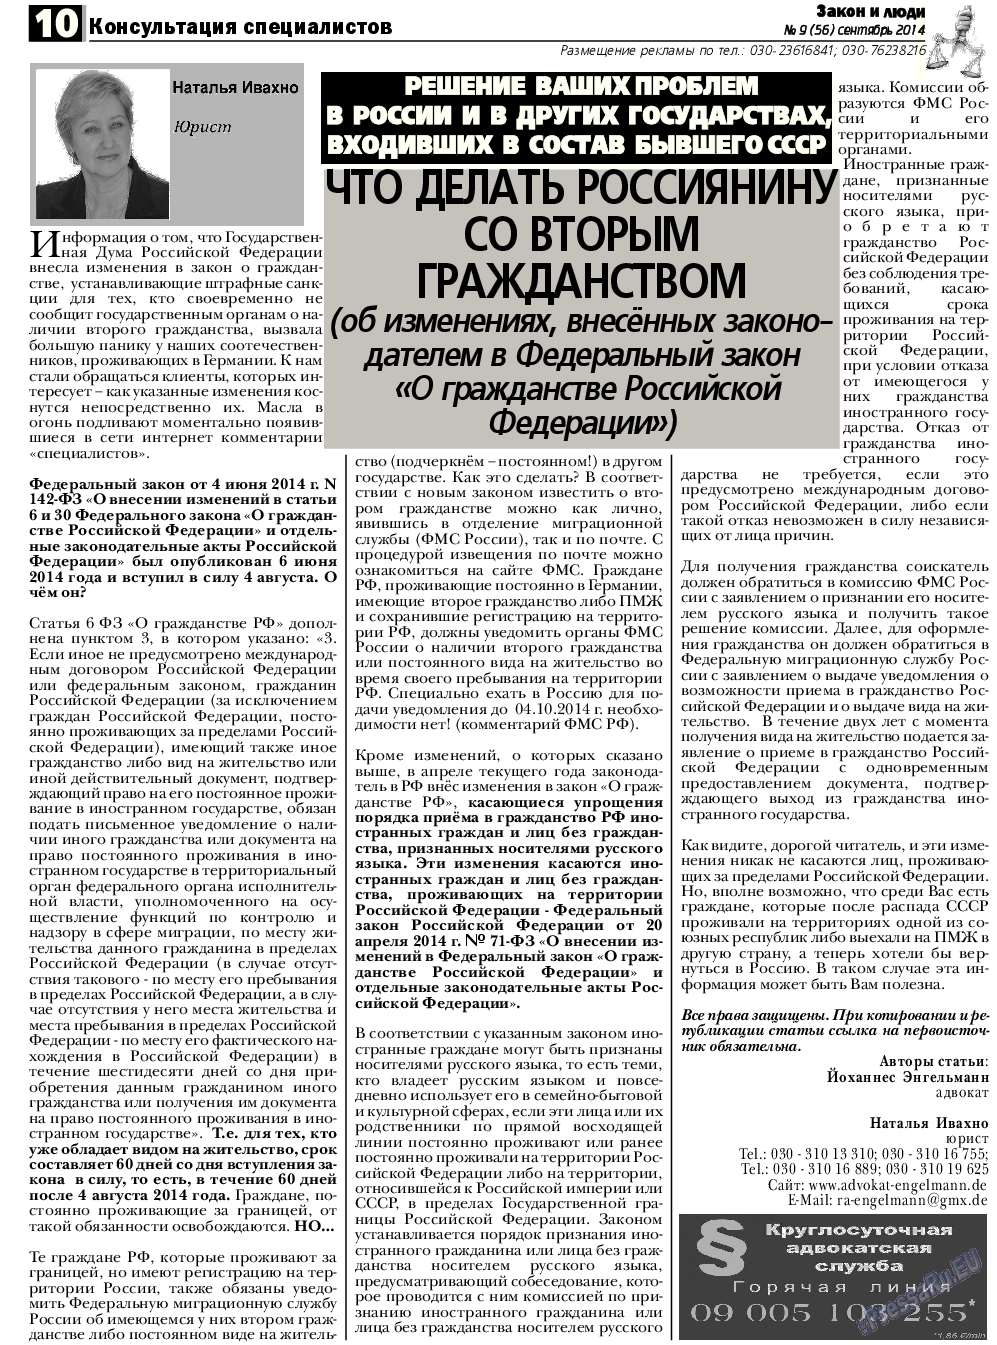 Закон и люди, газета. 2014 №9 стр.10